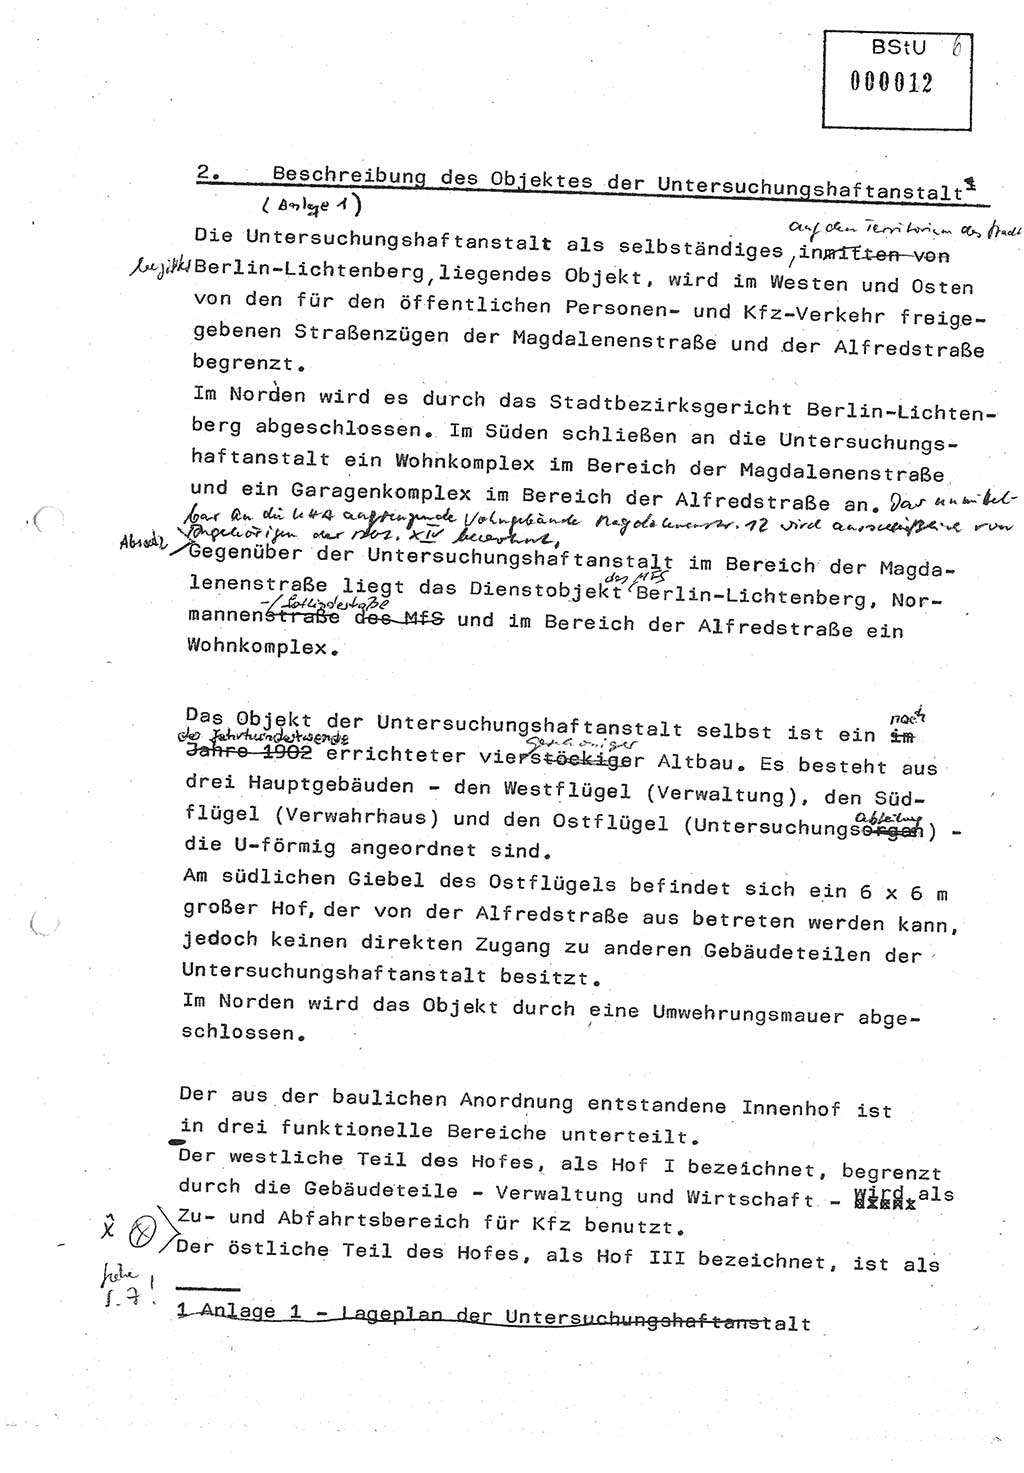 Diplomarbeit (Entwurf) Oberleutnant Peter Parke (Abt. ⅩⅣ), Ministerium für Staatssicherheit (MfS) [Deutsche Demokratische Republik (DDR)], Juristische Hochschule (JHS), Geheime Verschlußsache (GVS) o001-98/86, Potsdam 1986, Seite 12 (Dipl.-Arb. MfS DDR JHS GVS o001-98/86 1986, S. 12)